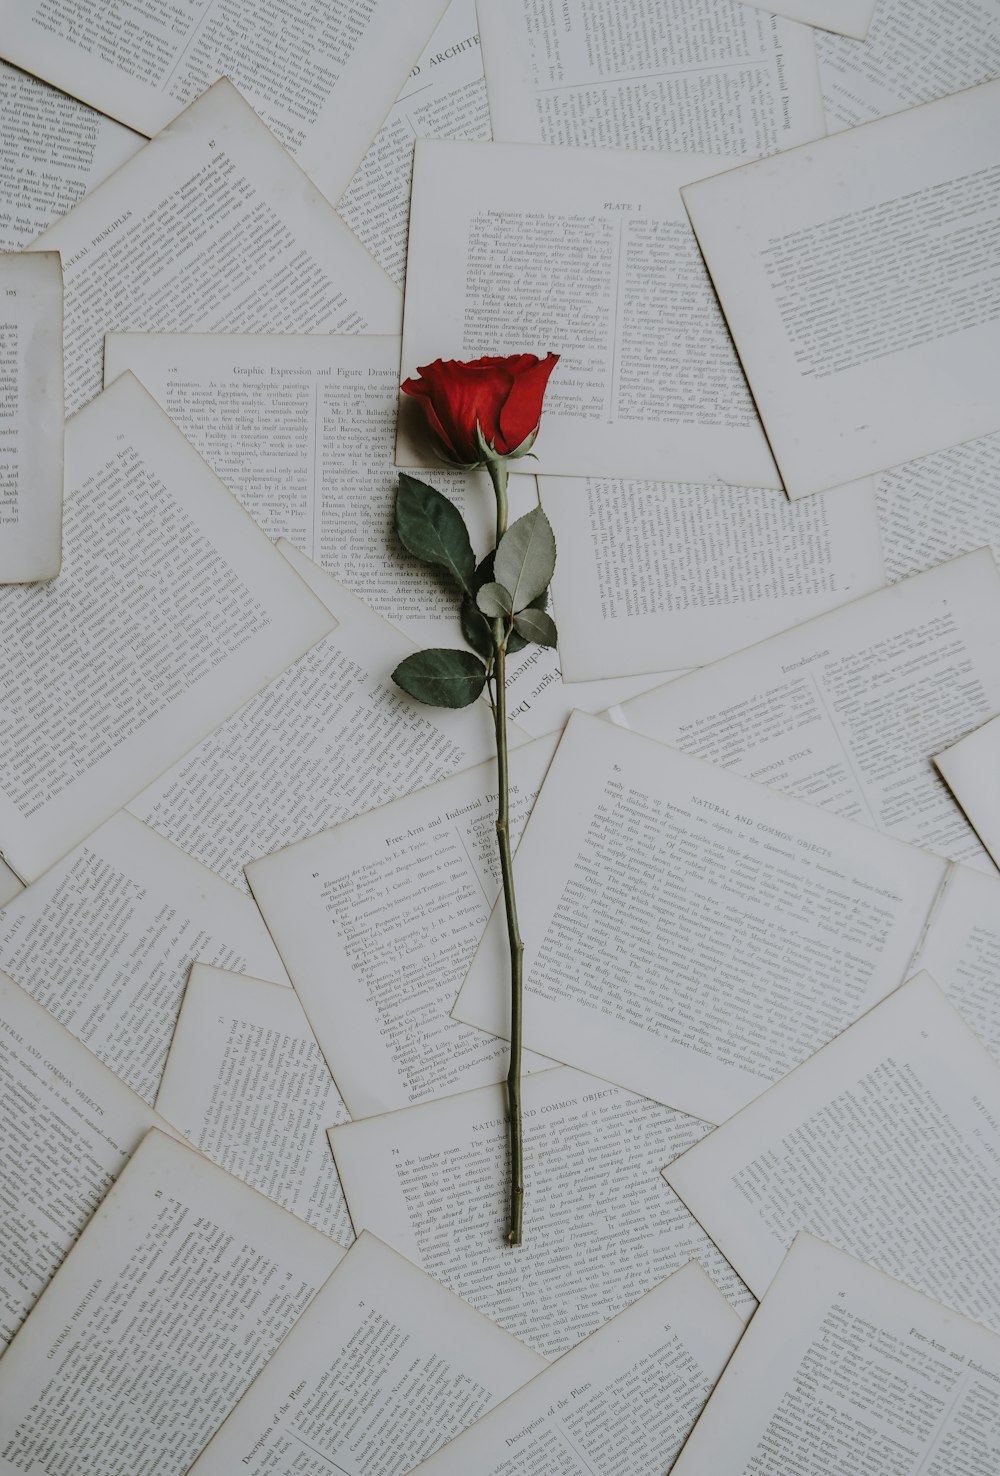 Rosa roja en hojas de libro